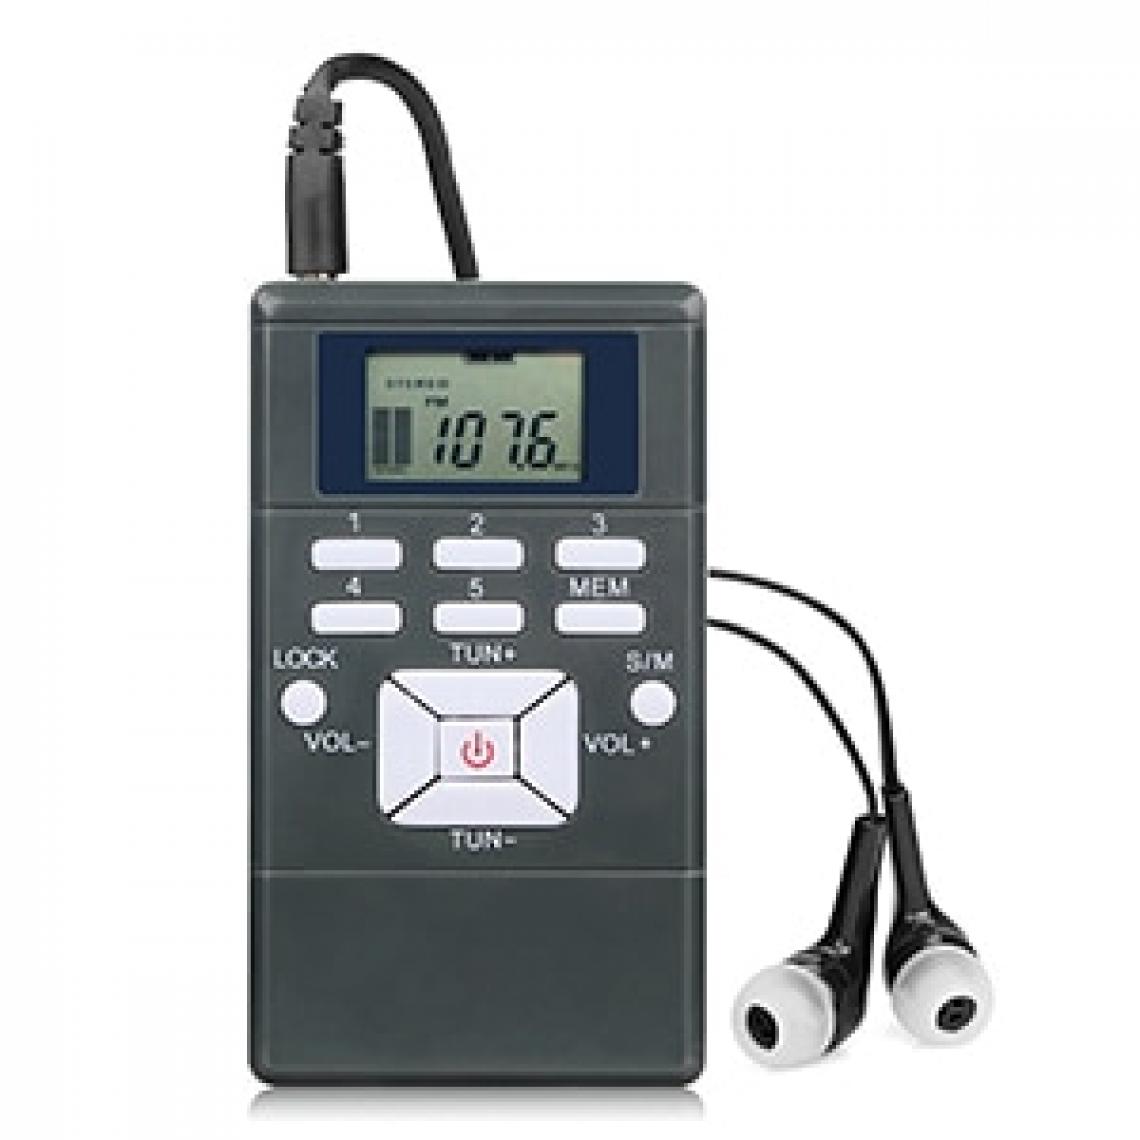 Universal - Récepteur radio FM radio stéréo portable DSP mini-récepteur d'horloge numérique pour l'église, la conférence, le musée, le guide de visite | radio DSP | radio stéréo FM radio stéréo(Le noir) - Radio